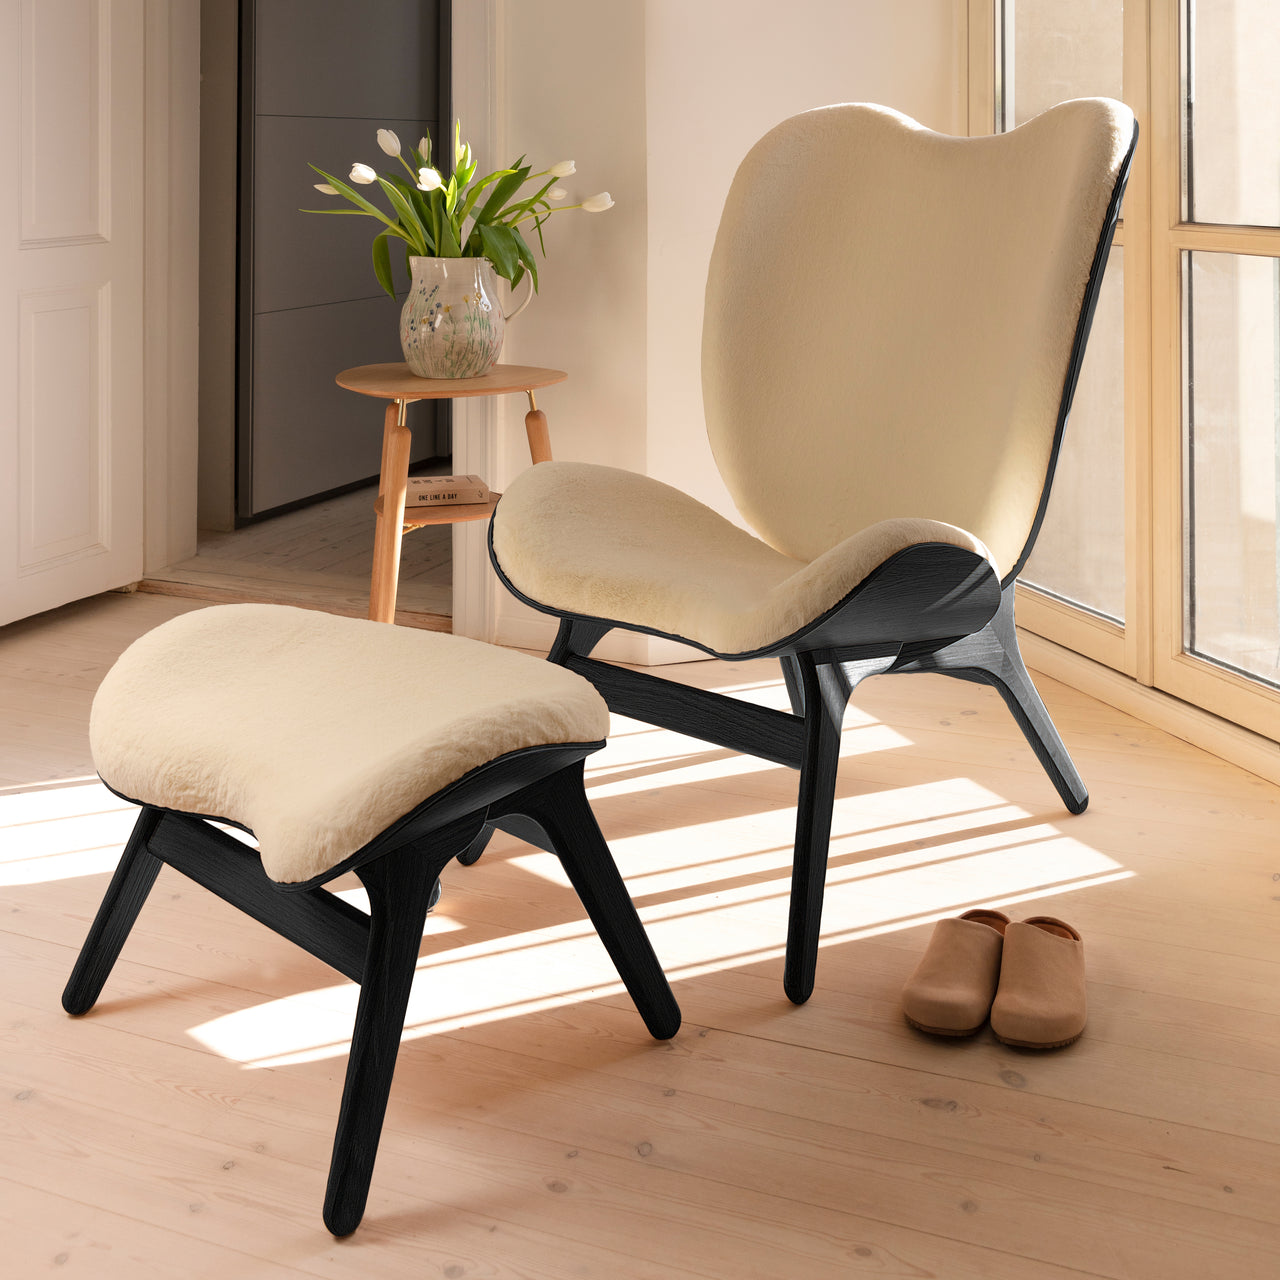 A Conversation Piece Lounge Chair: Tall